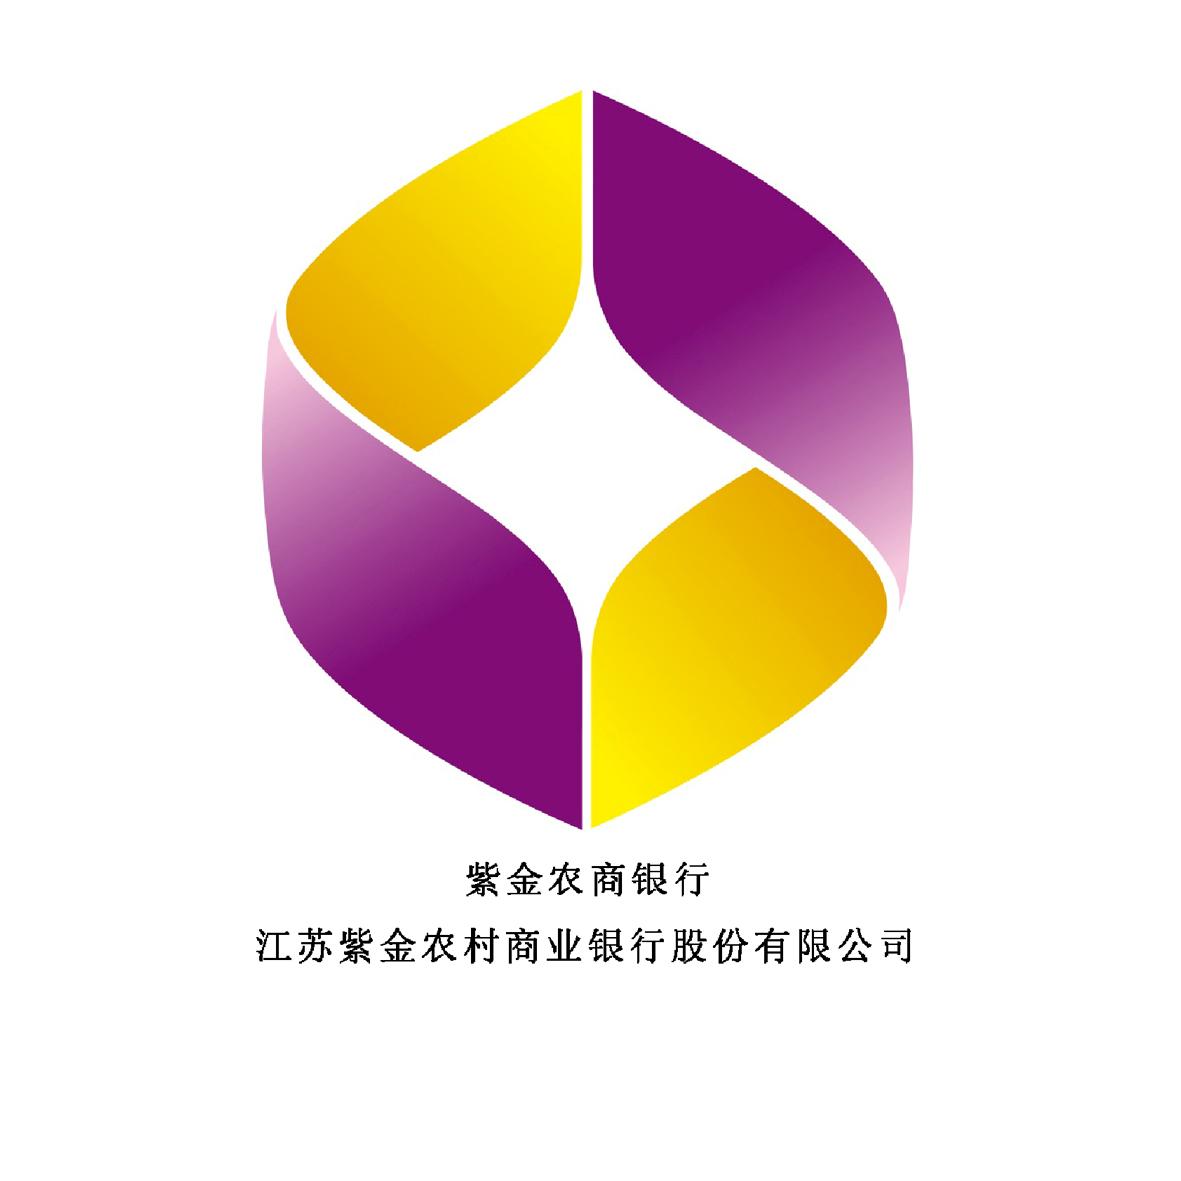 紫金农商银行 江苏紫金农村商业银行股份有限公司 商标公告